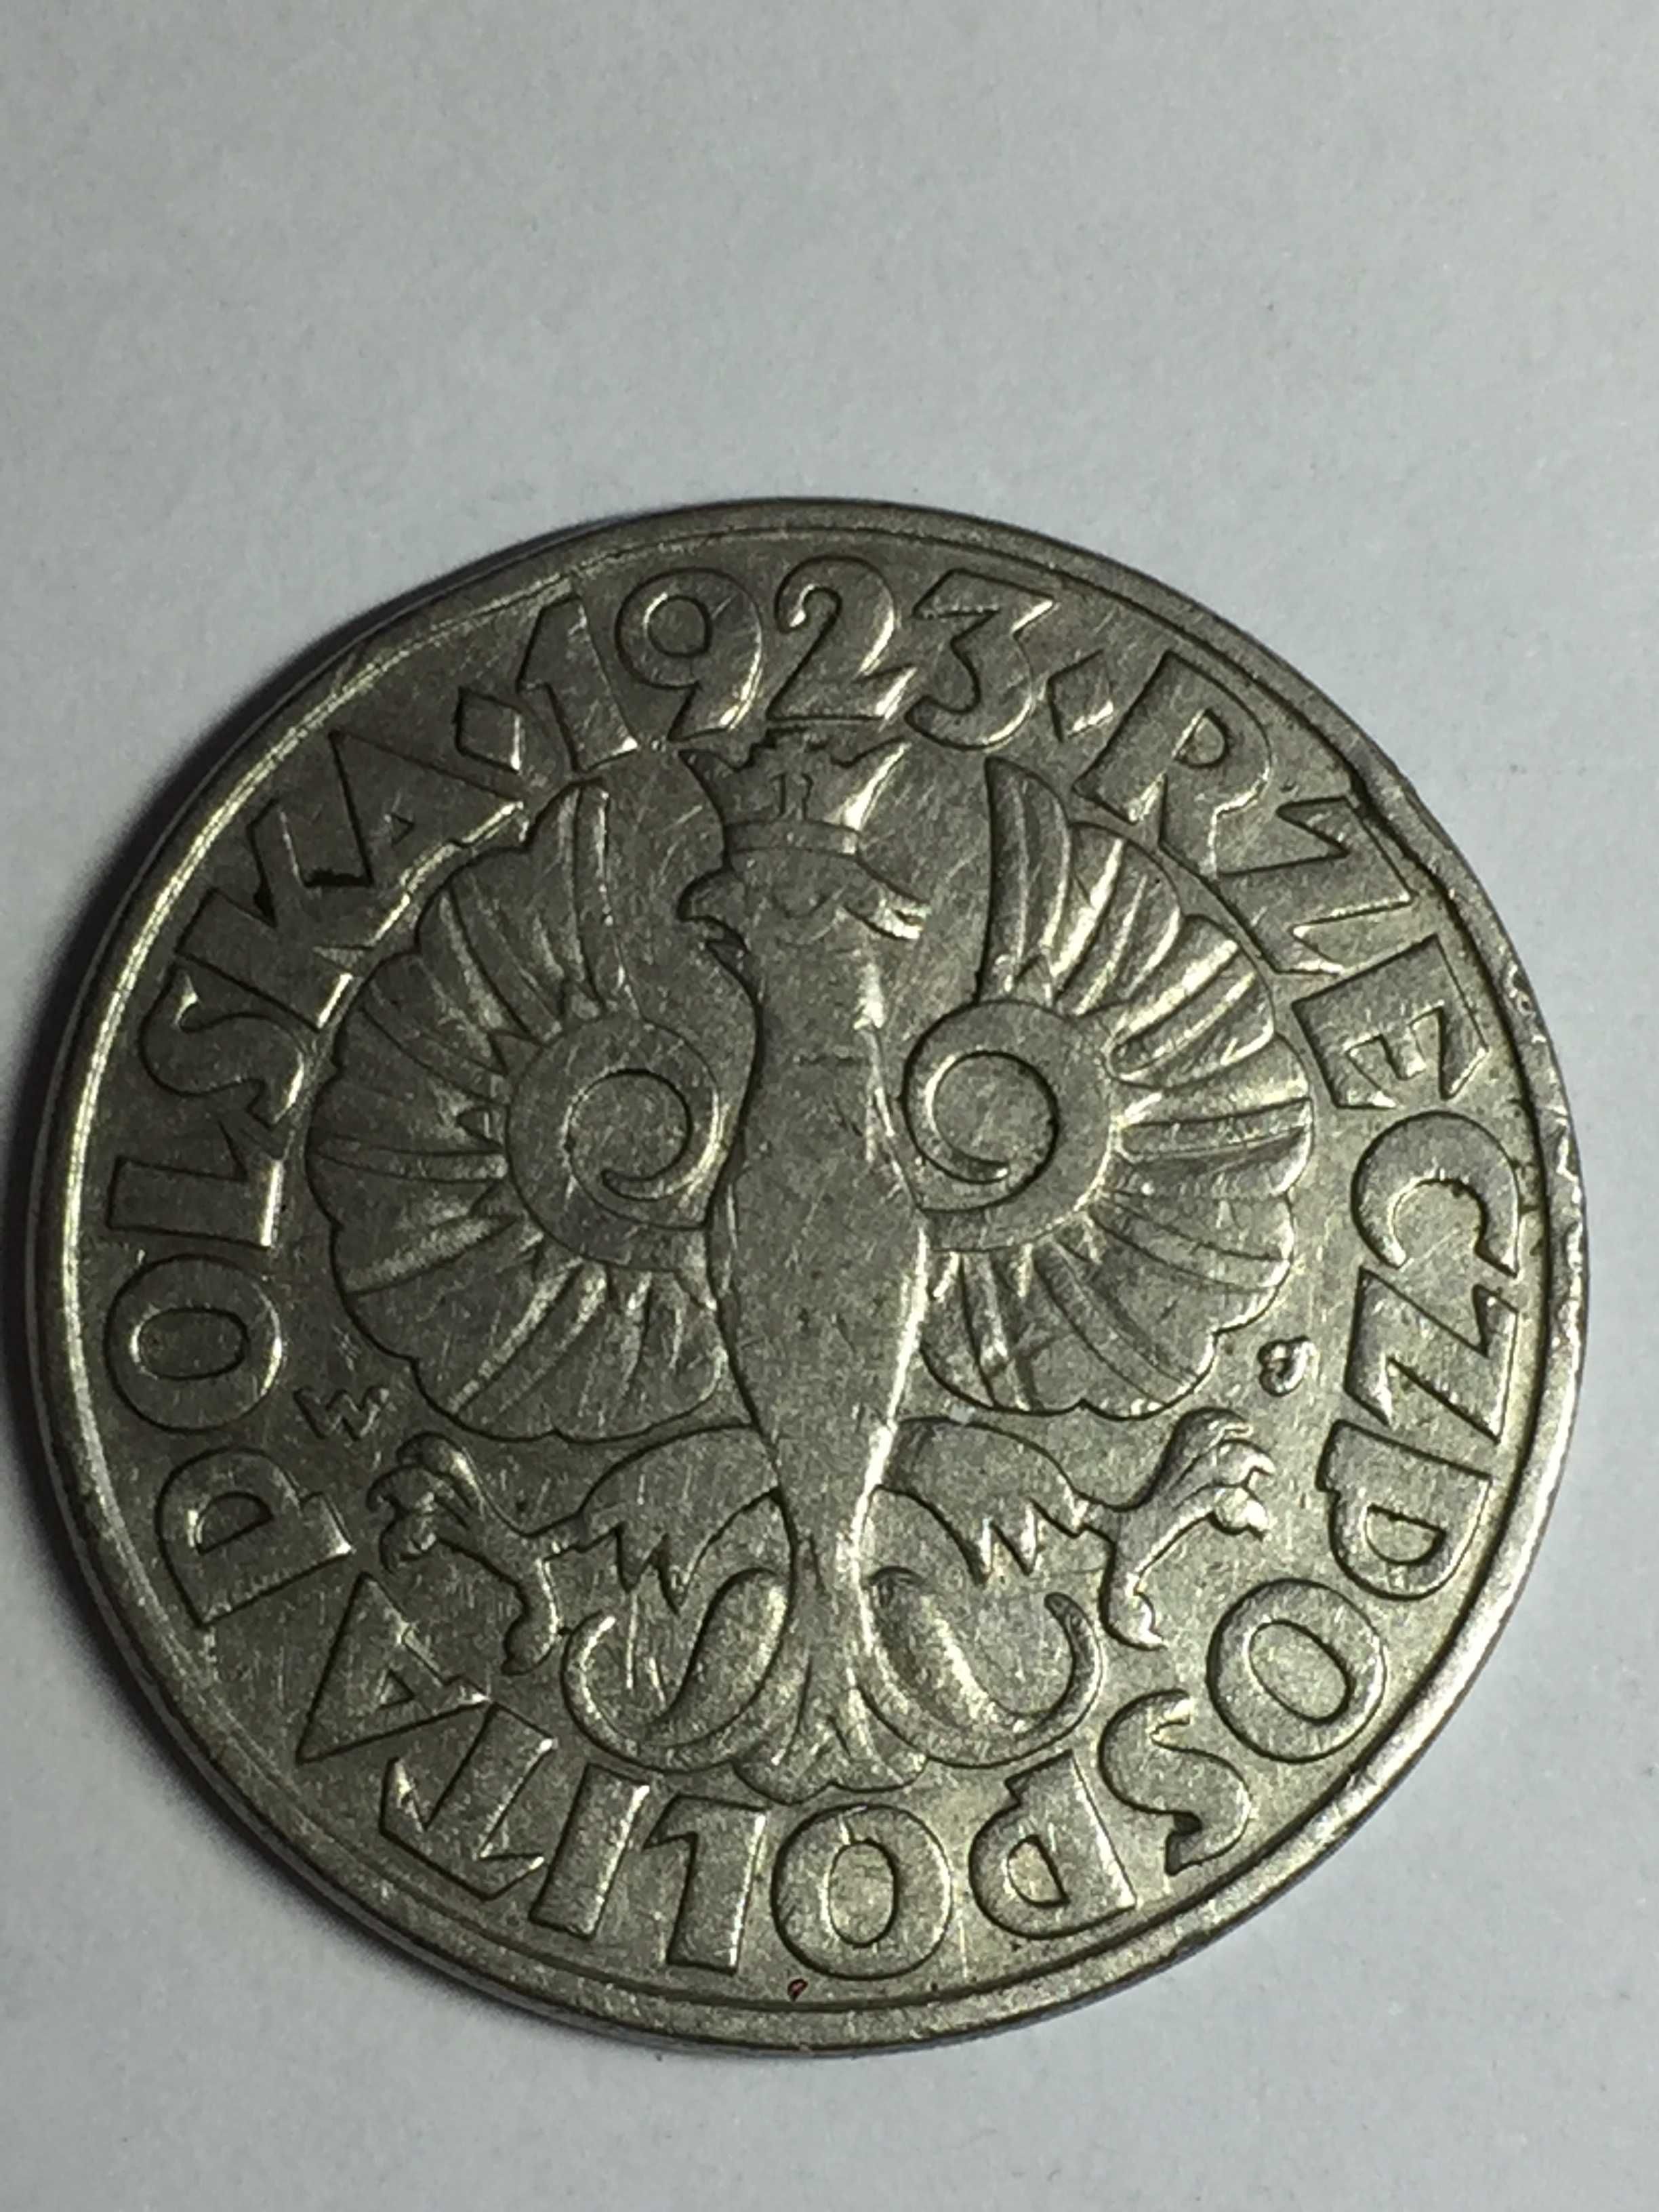 Moneta 50 gr metalowa z 1923 roku